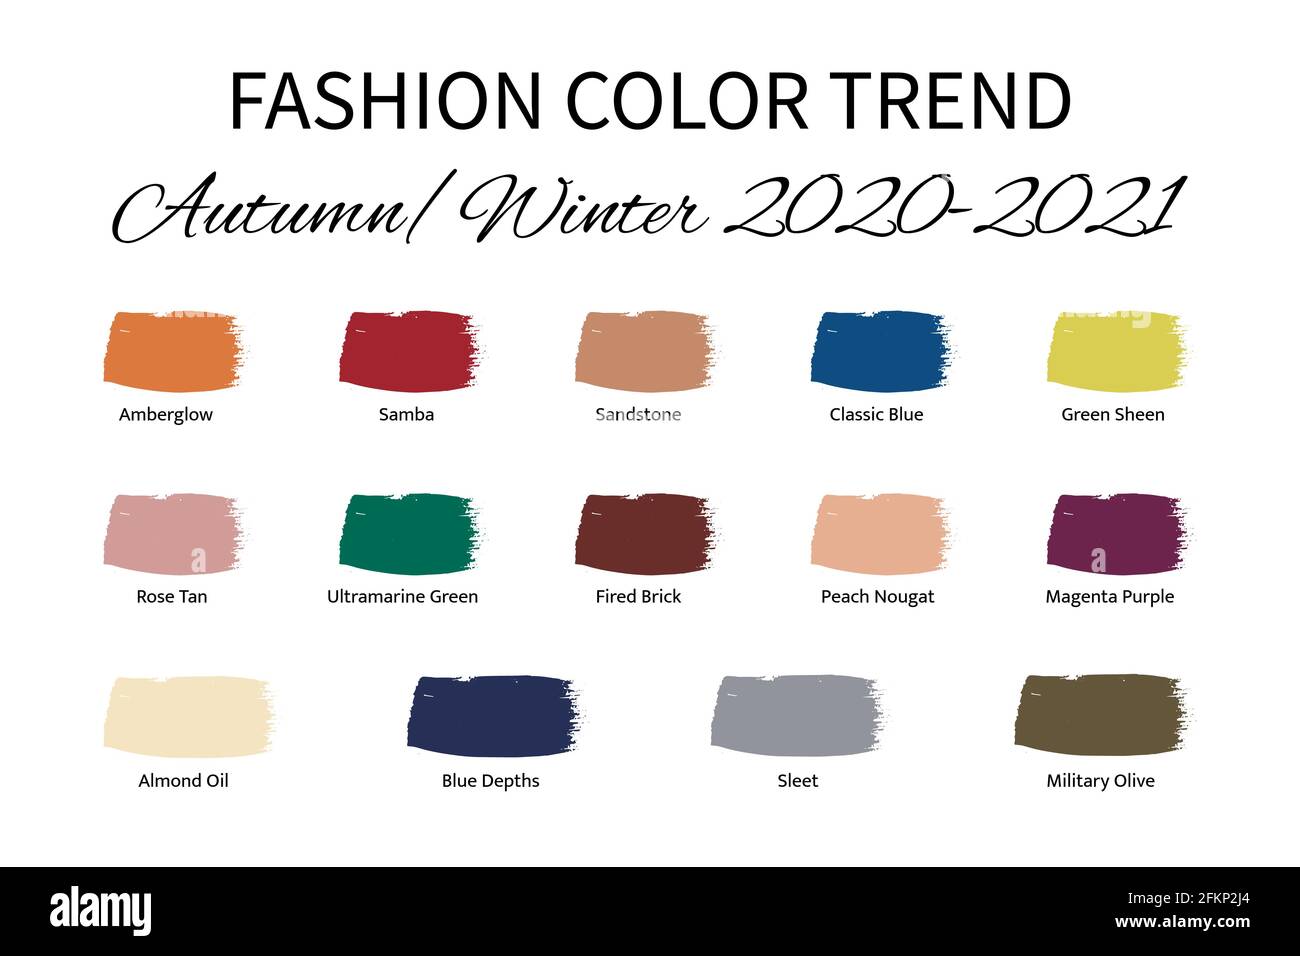 Tendencia de color de la moda Otoño Invierno 2020 - 2021. Guía de